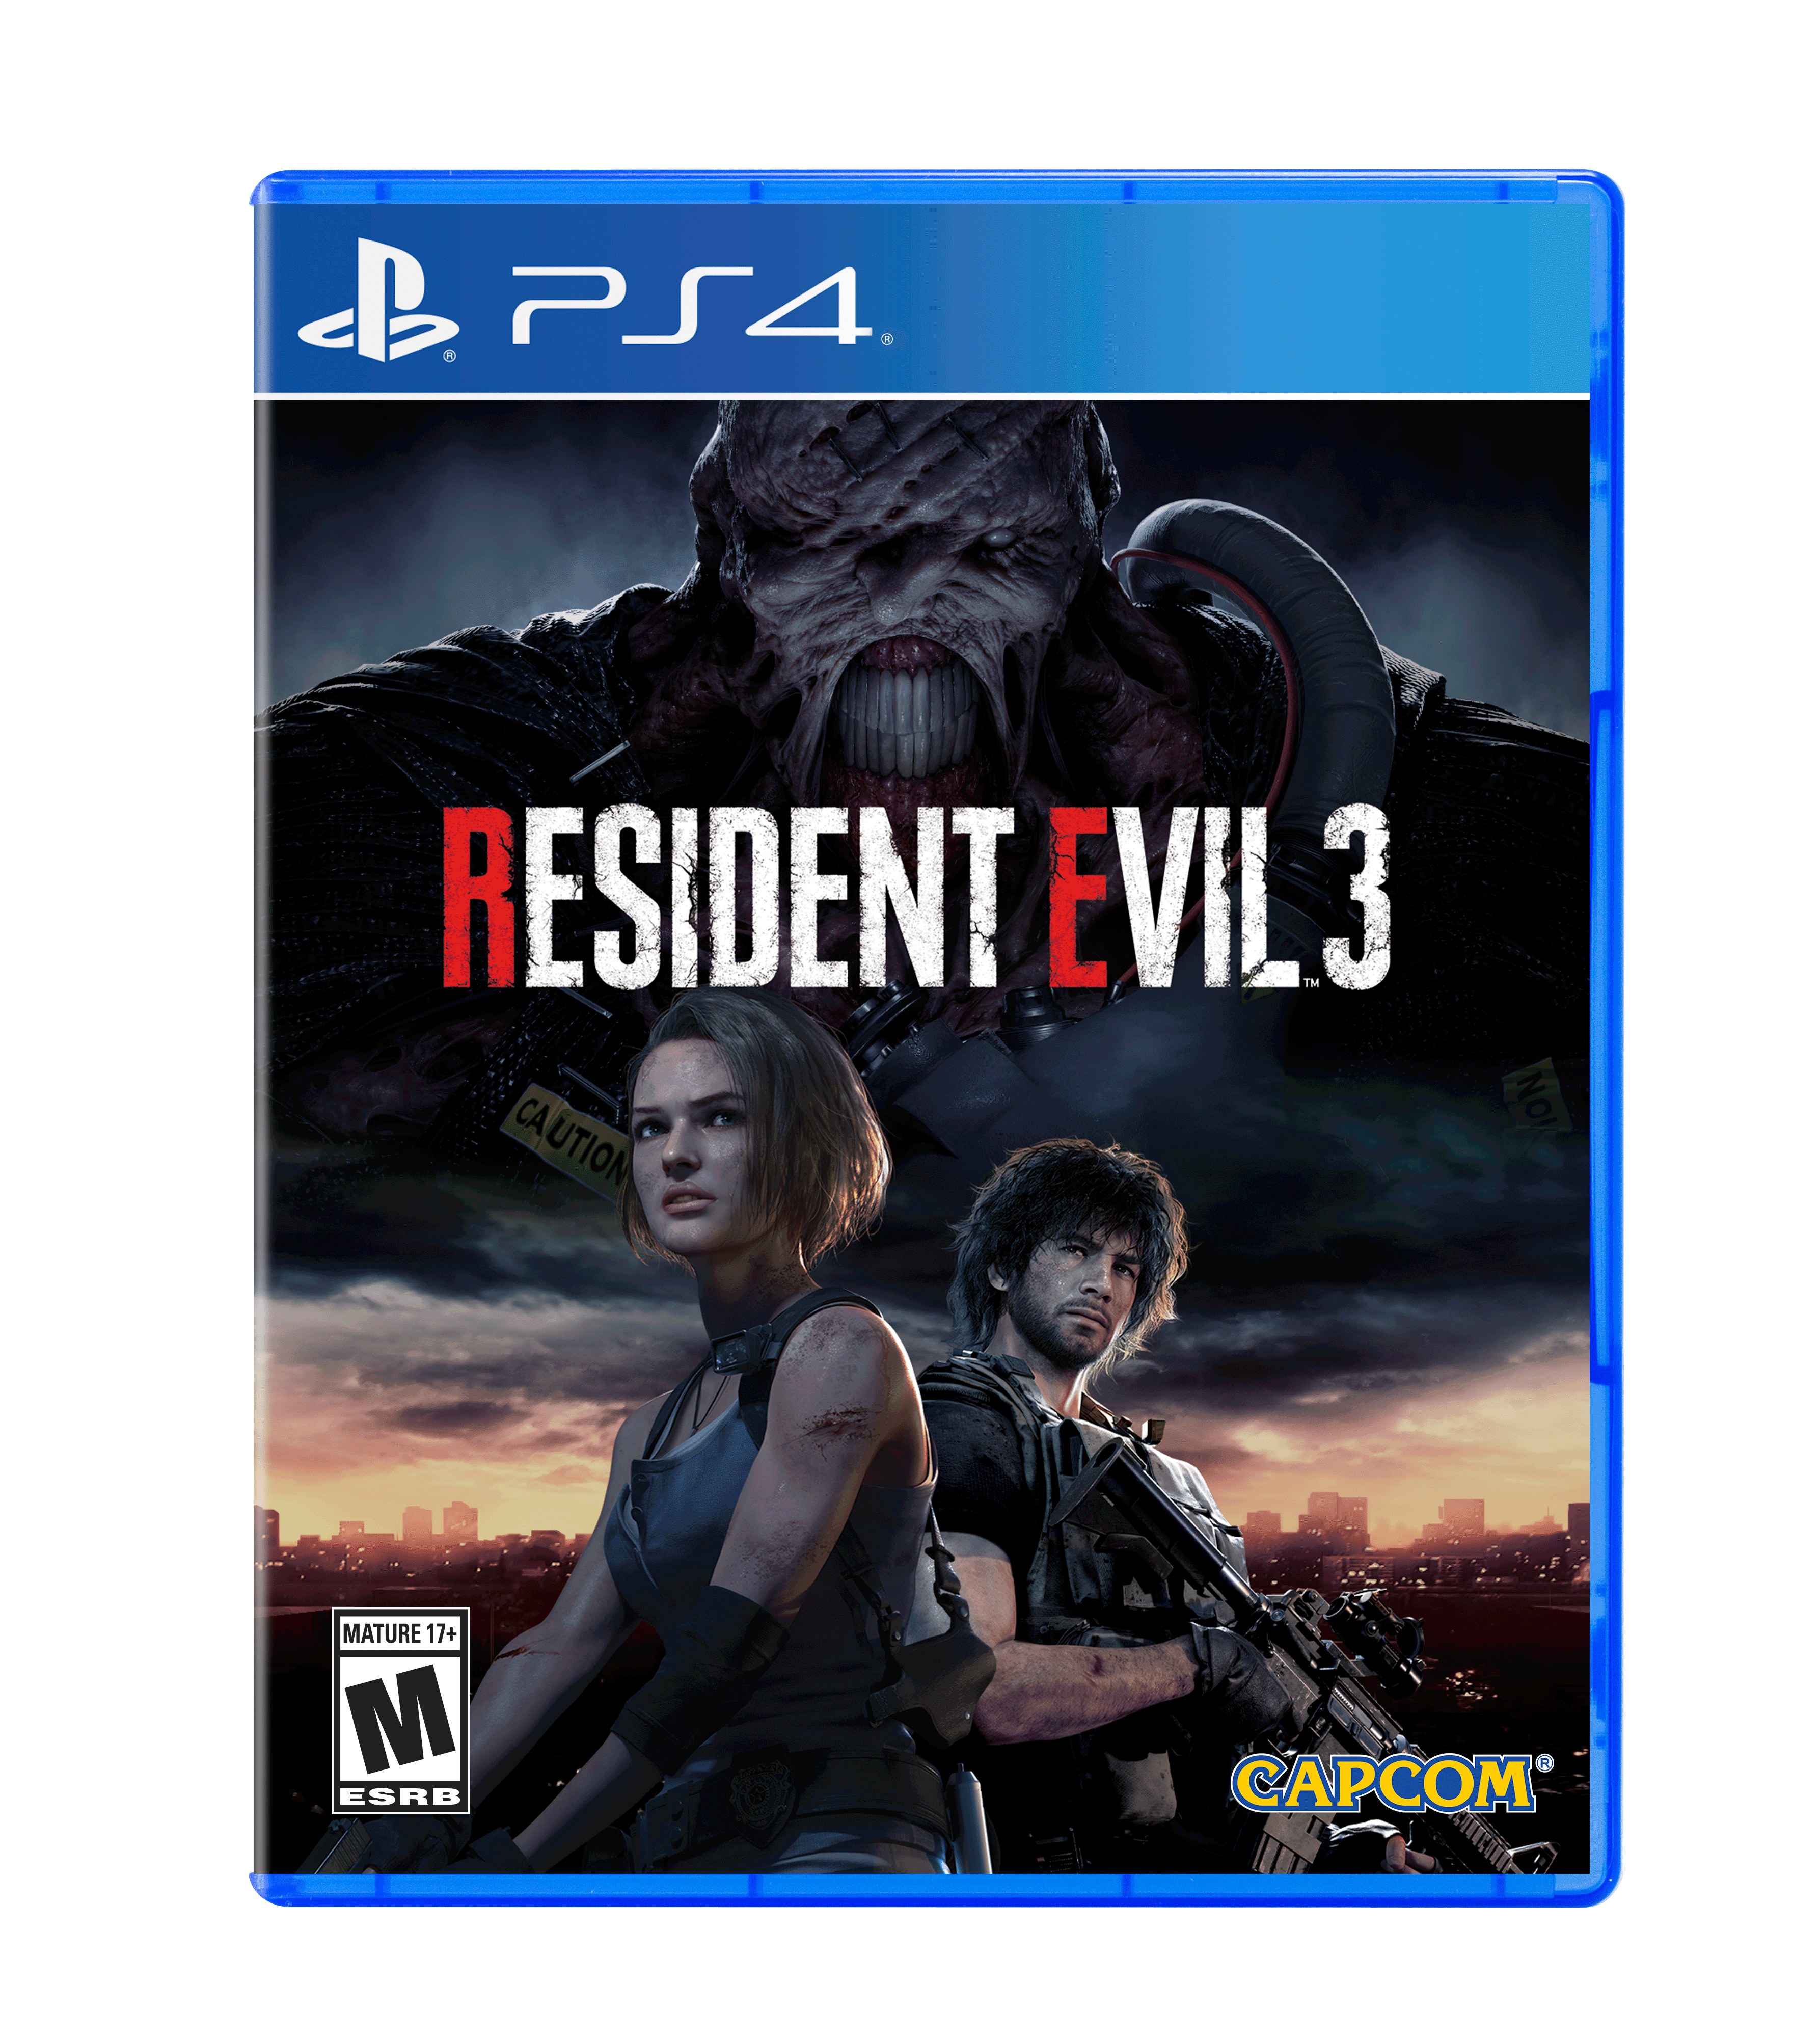 Resident Evil Capcom, 013388560646 - Walmart.com